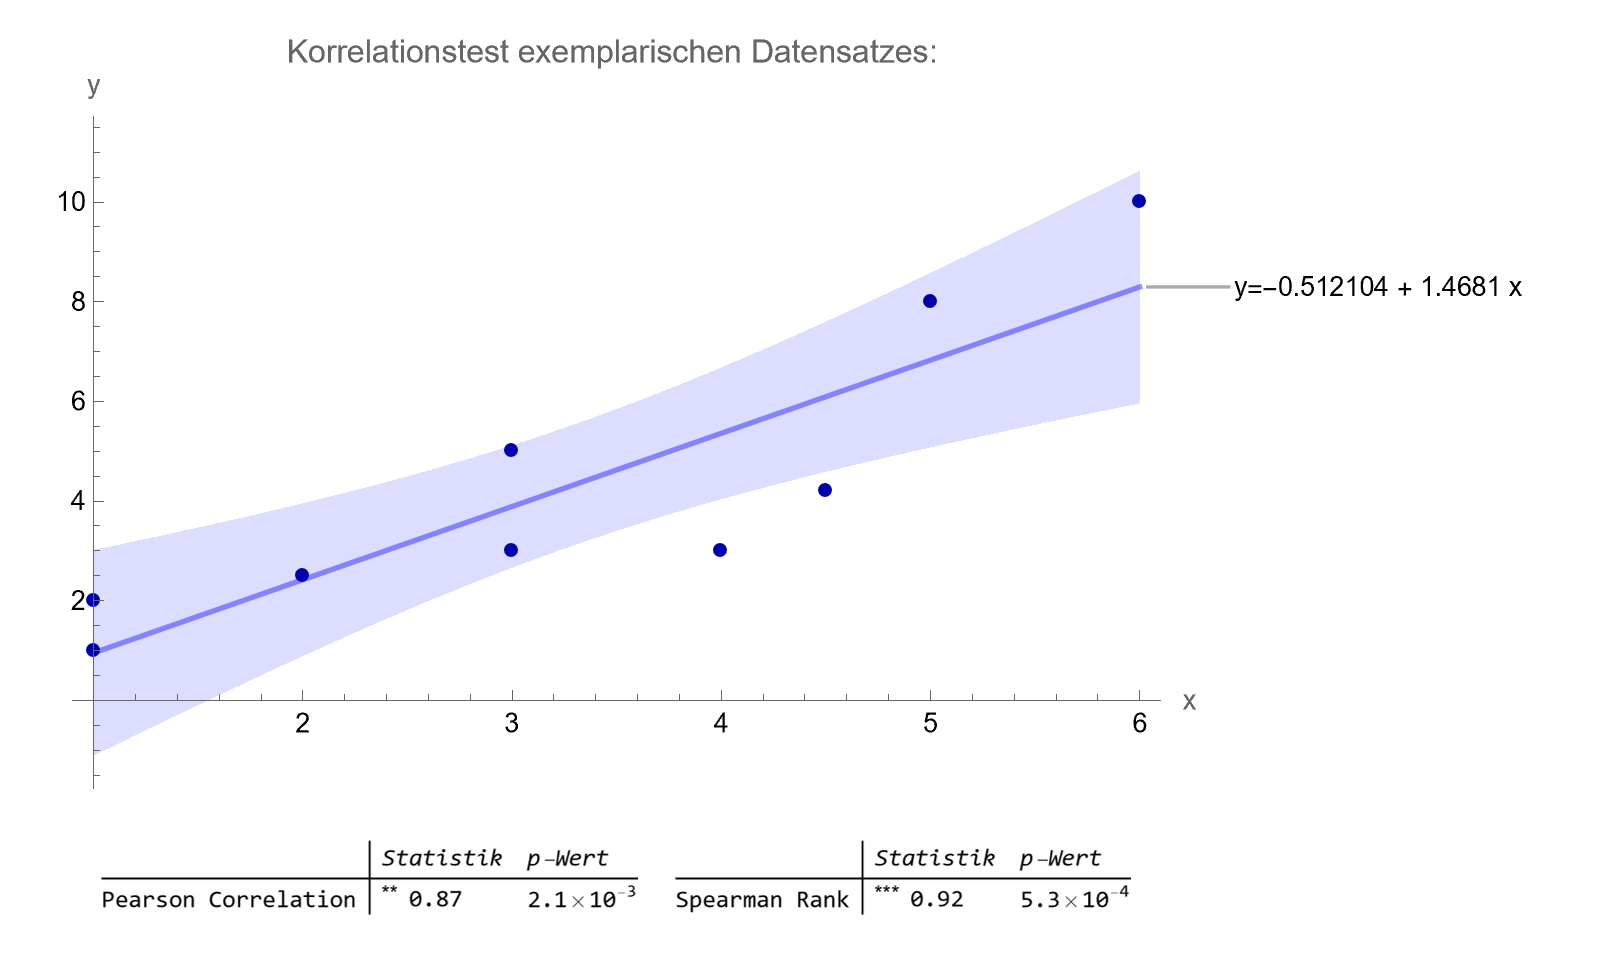 Mittels Spearman Rank Test oder Pearson Correlation wird auf Korrelation zwischen x und y getestet, wobei die Test-Statistik dem Korrelationsfaktor entspricht. Um die Einflusstärke von x auf y, bzw. vice versa zu bestimmen, wird die Steigung einer Regressionsgeraden herangezogen.